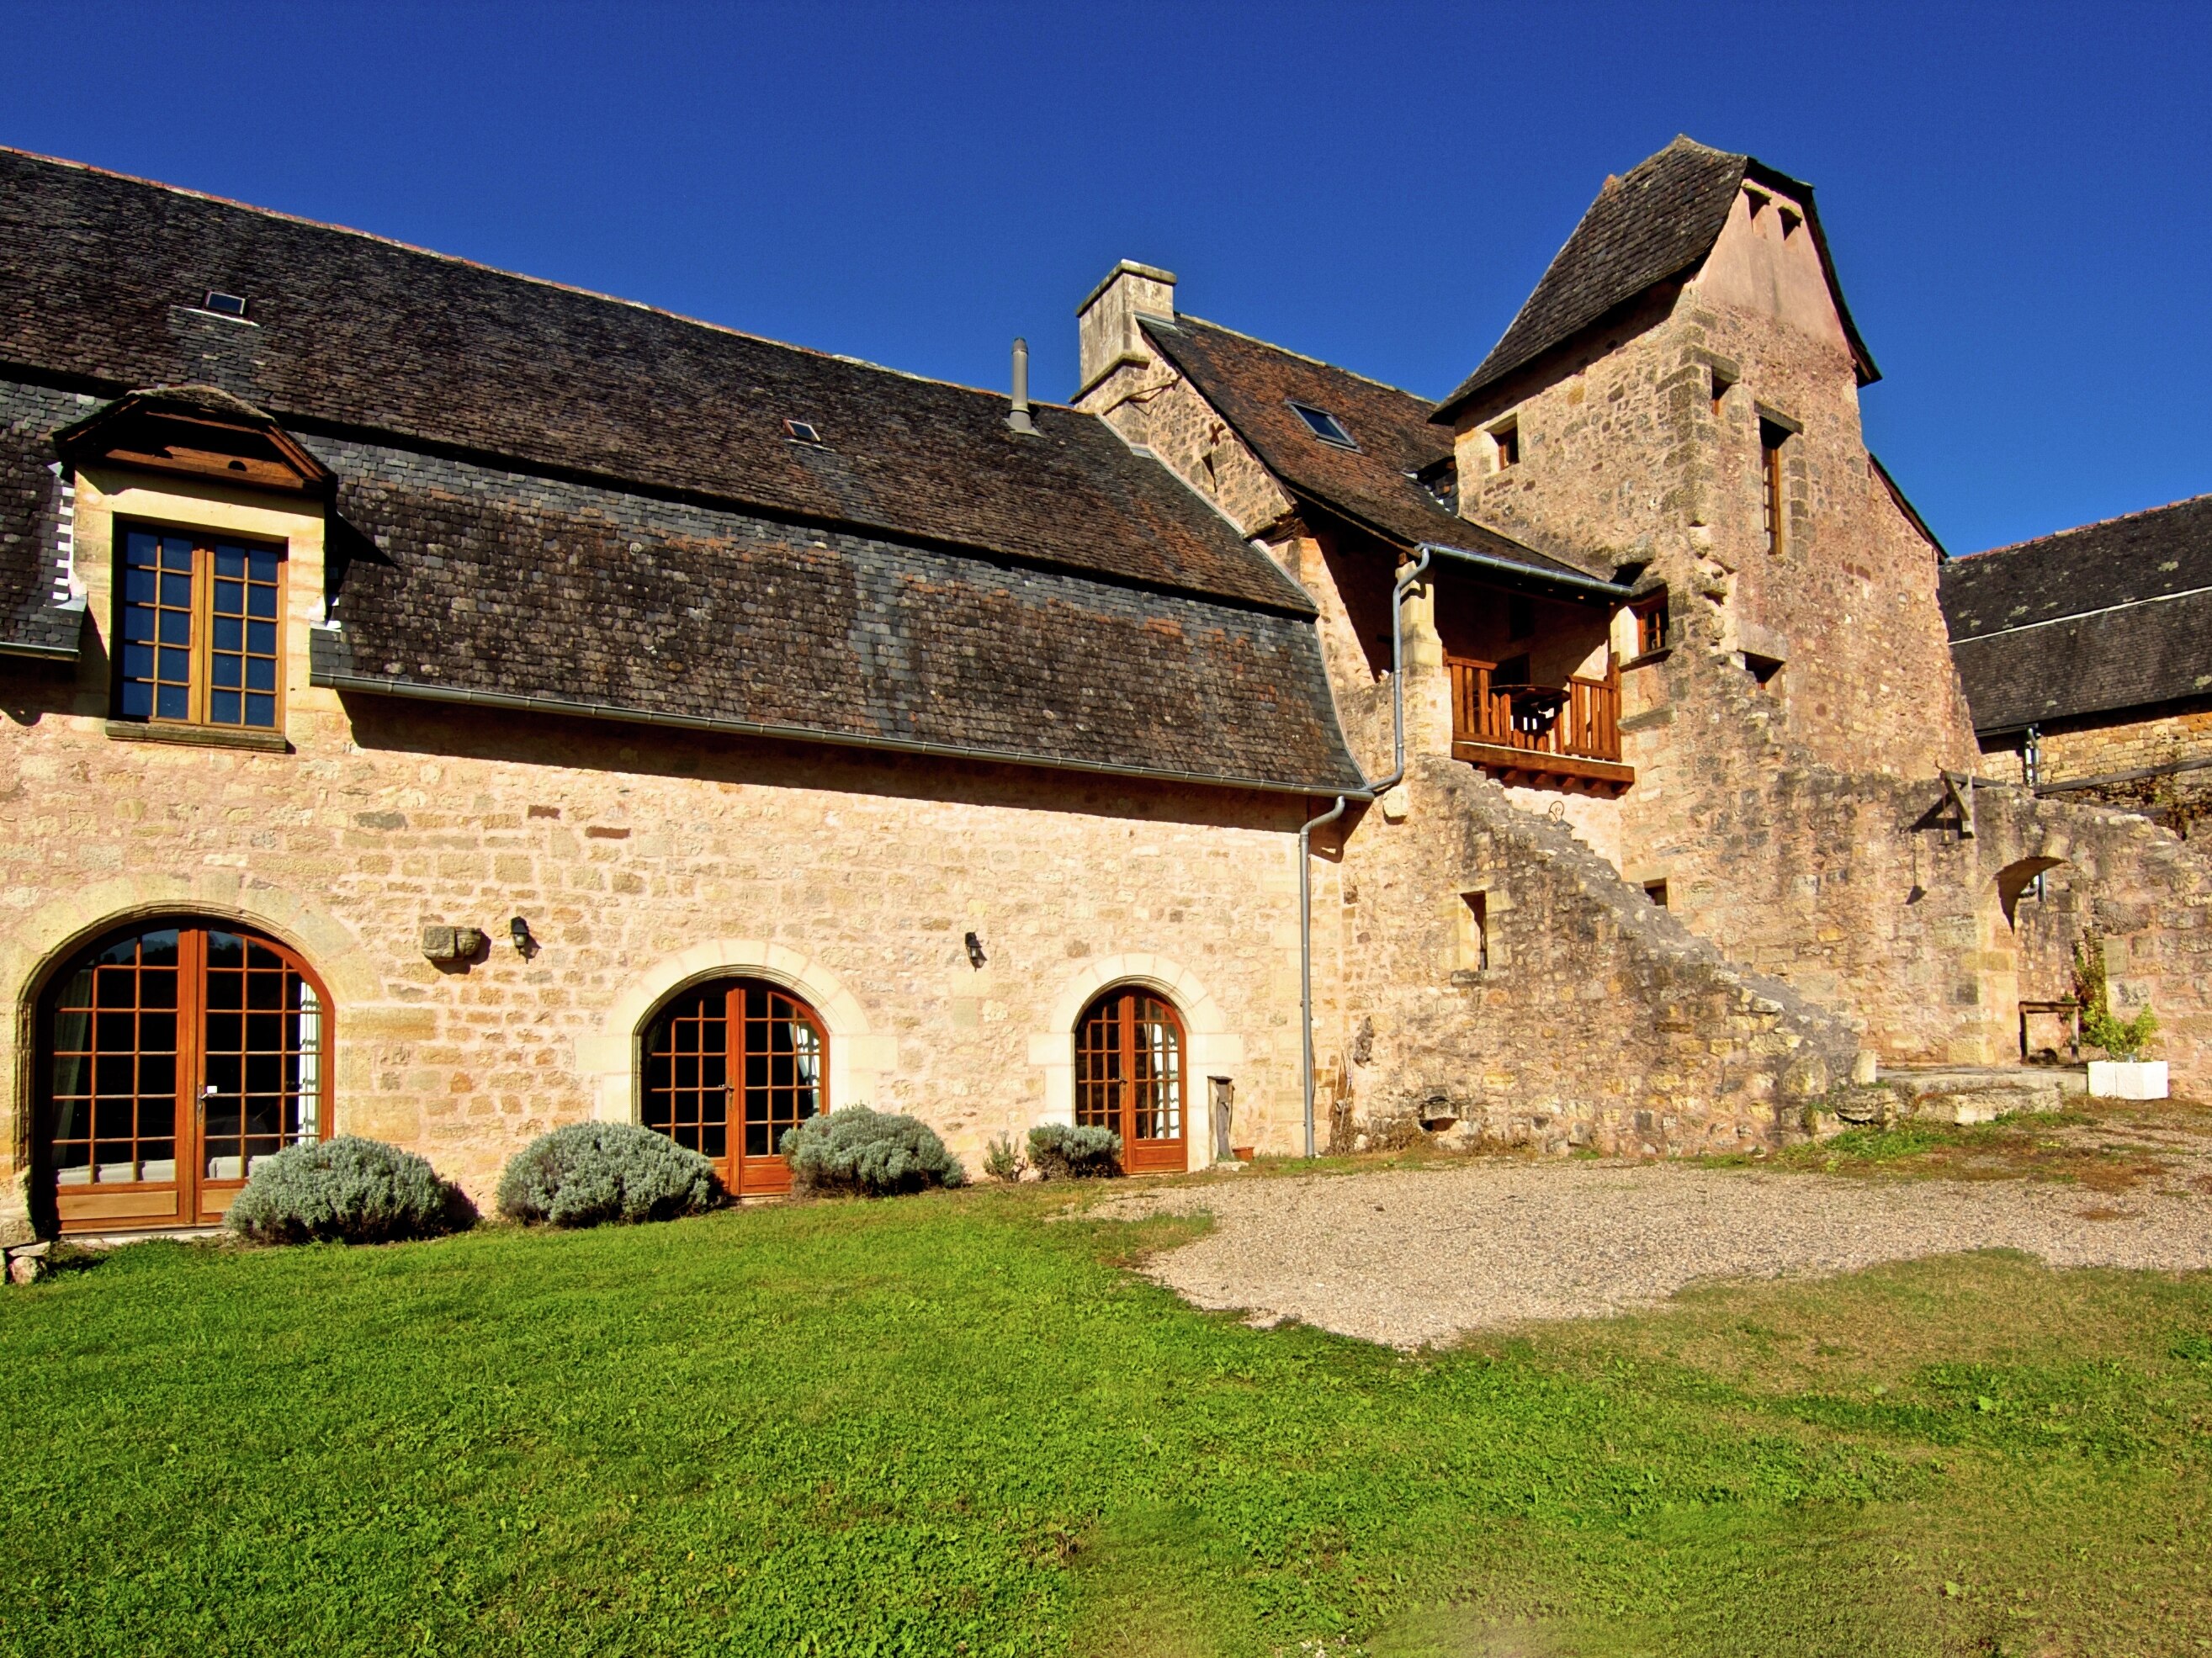 Met een gezelschap tot zes personen kun je verblijven in deze 13e-eeuwse abdij in de Dordogne